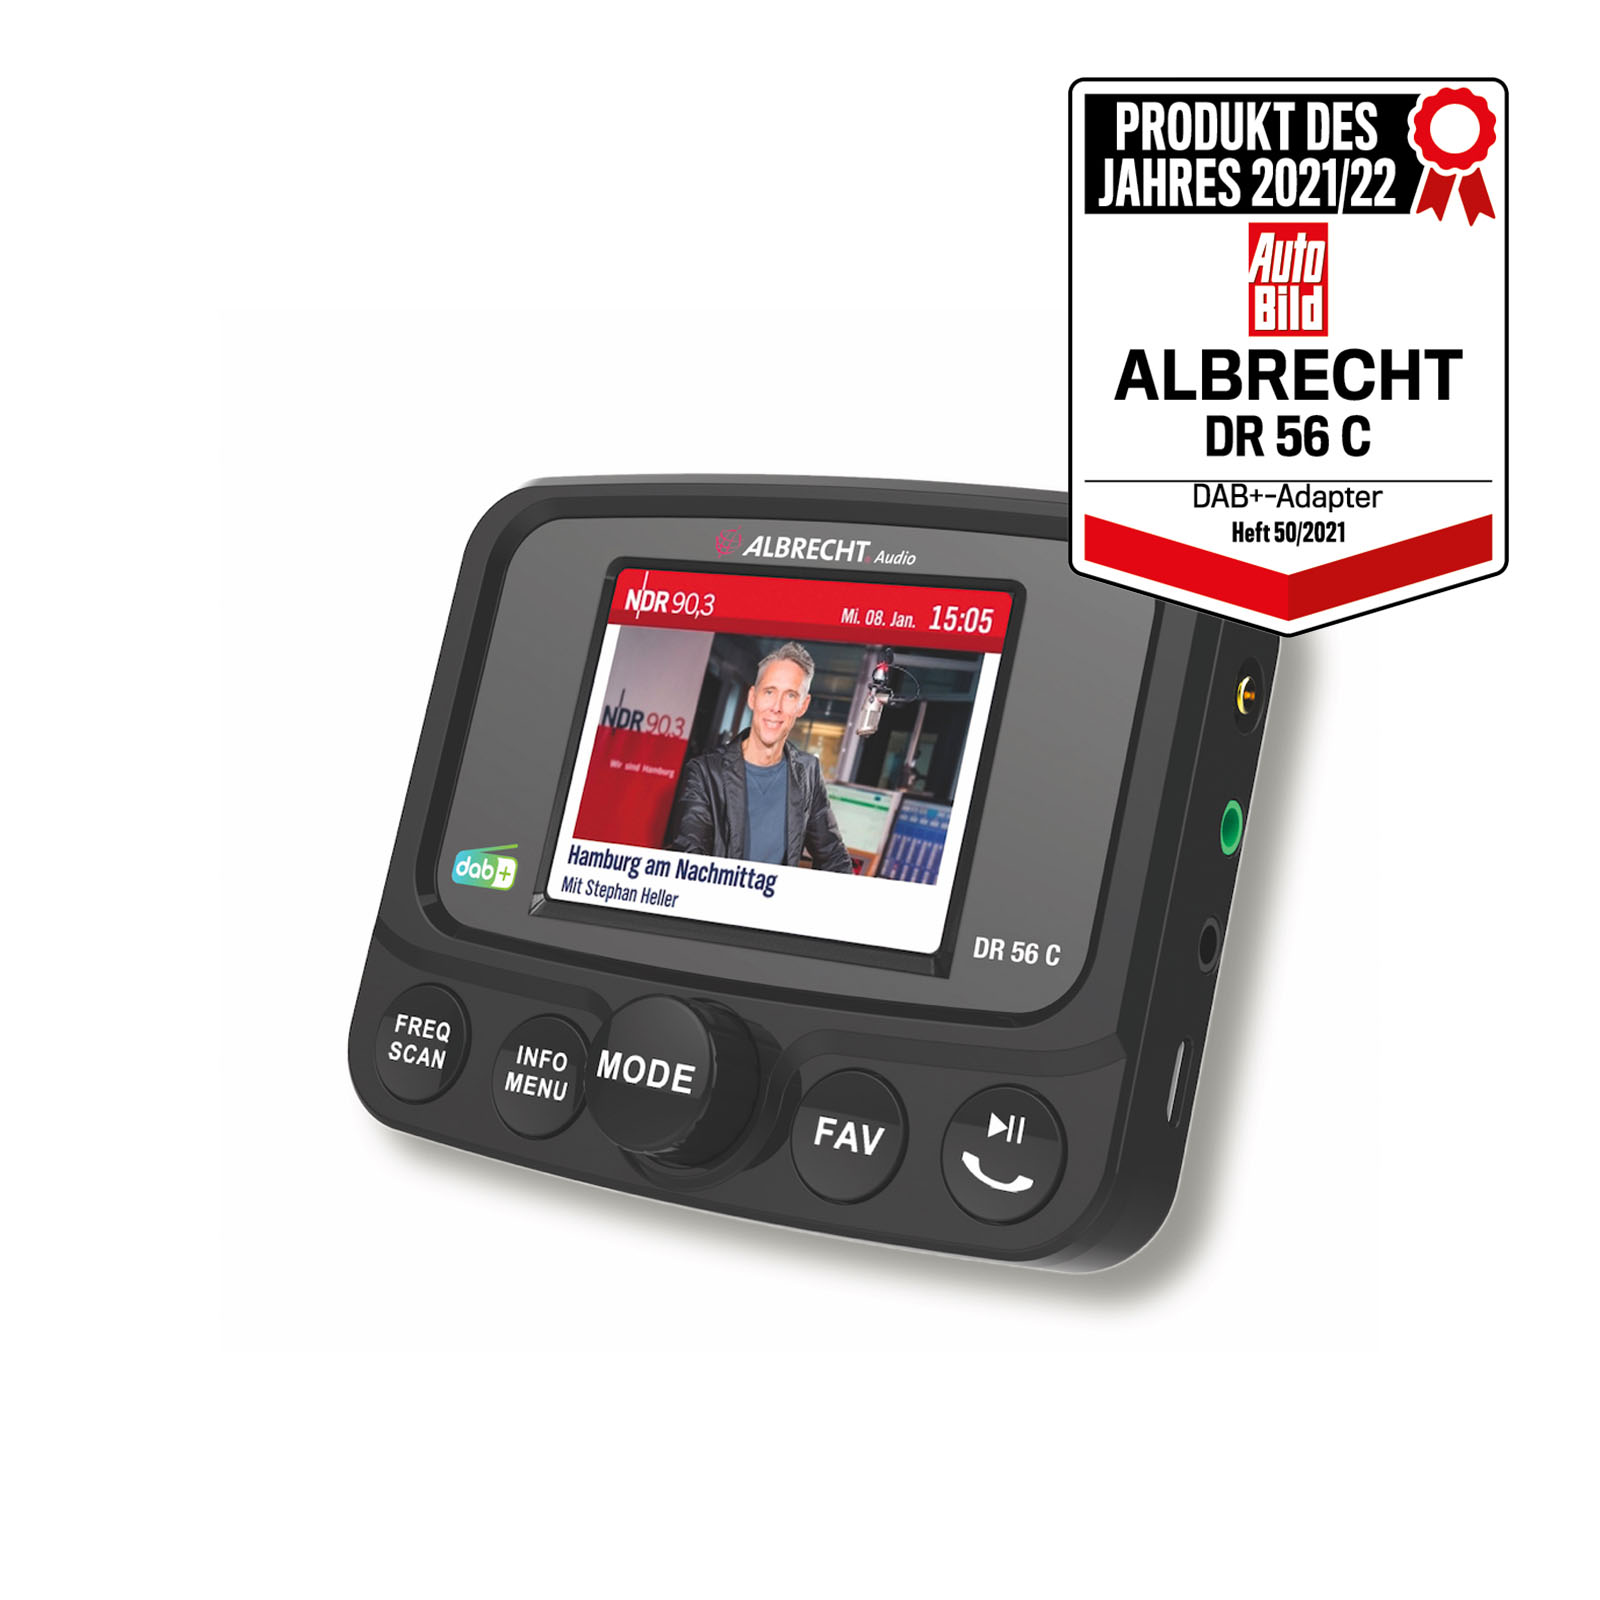 Albrecht DR 56 C DAB+ Autoradio Adapter mit Farbdisplay _4032661271563_ALBRECHT_#7